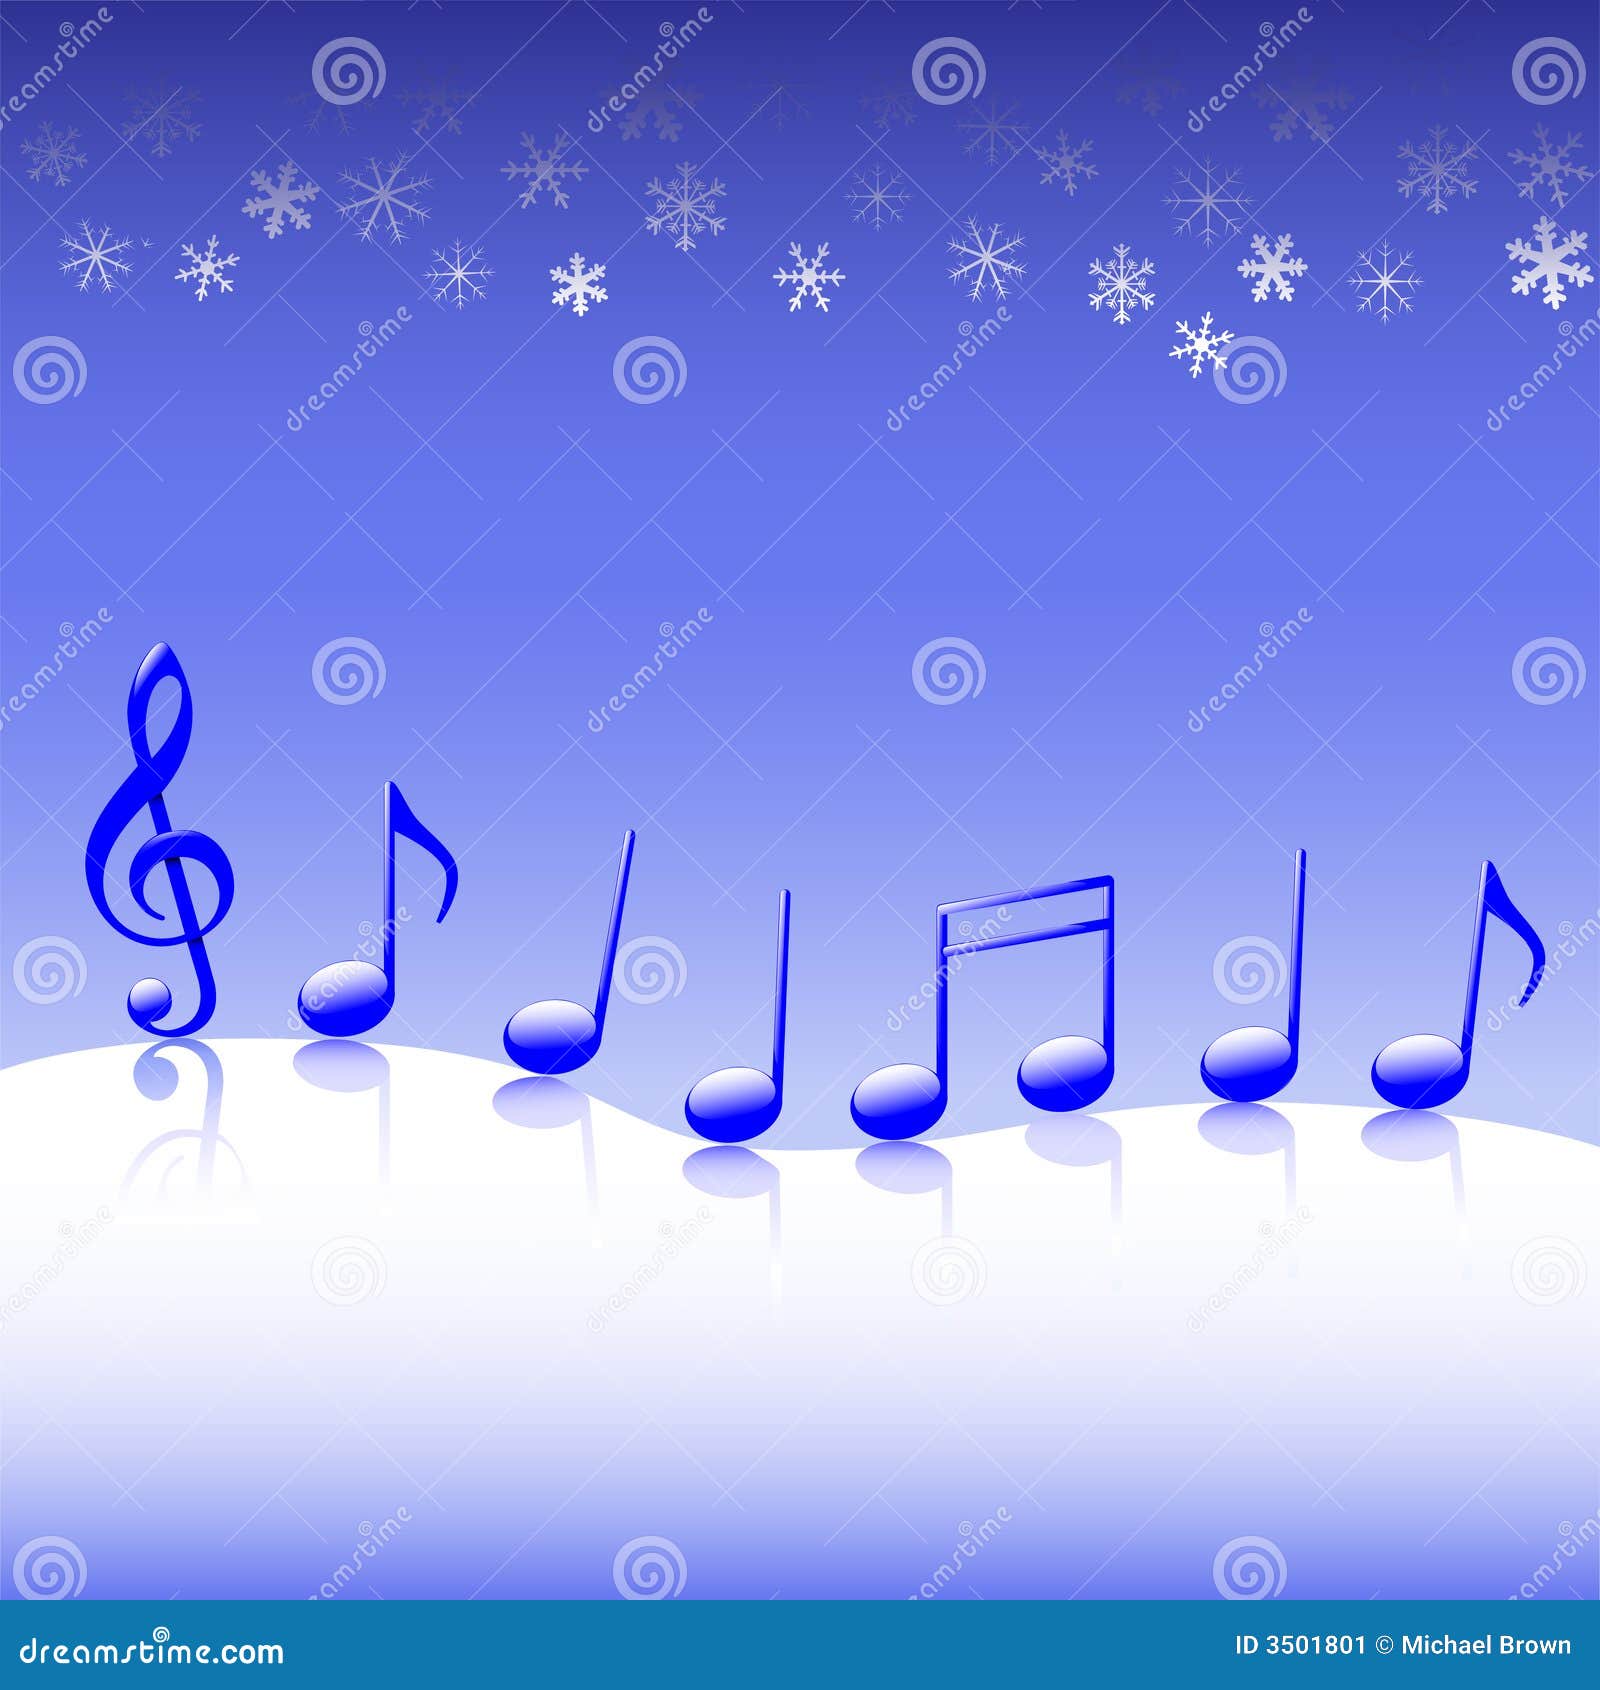 Trong đêm Giáng Sinh trên tuyết, âm nhạc đêm se lạnh nhưng cũng đầy ấm áp sẽ hát lên niềm hy vọng và niềm tin trong tình yêu, đem lại cho bạn những trải nghiệm tuyệt vời và khó quên.